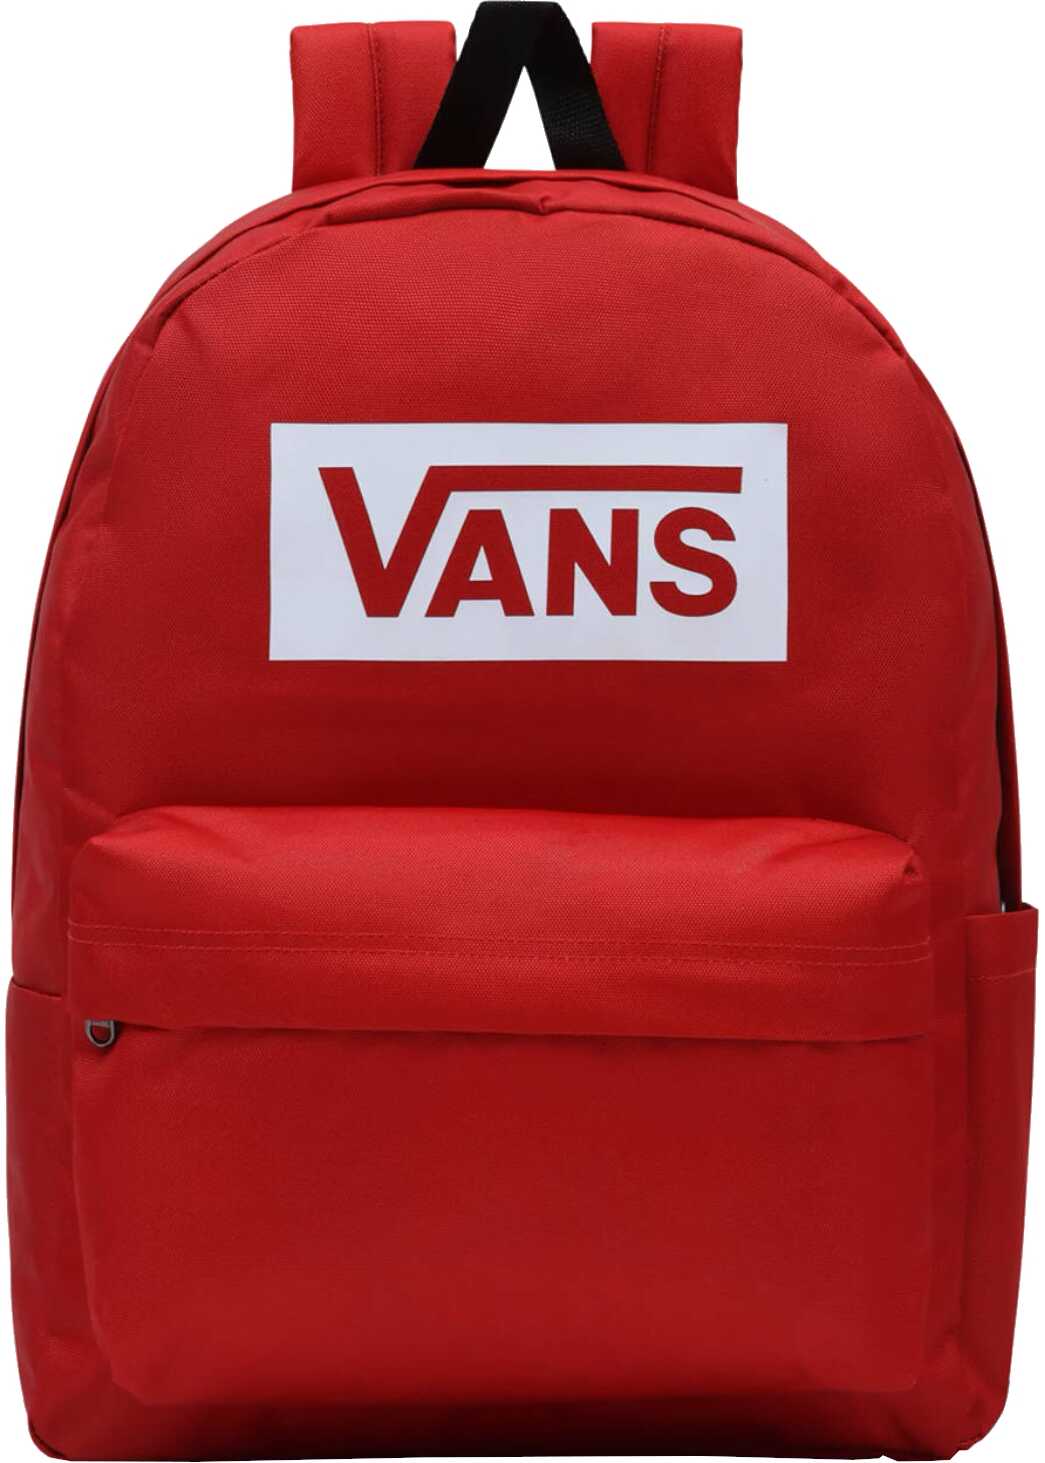 Vans Old Skool Boxed Backpack Red